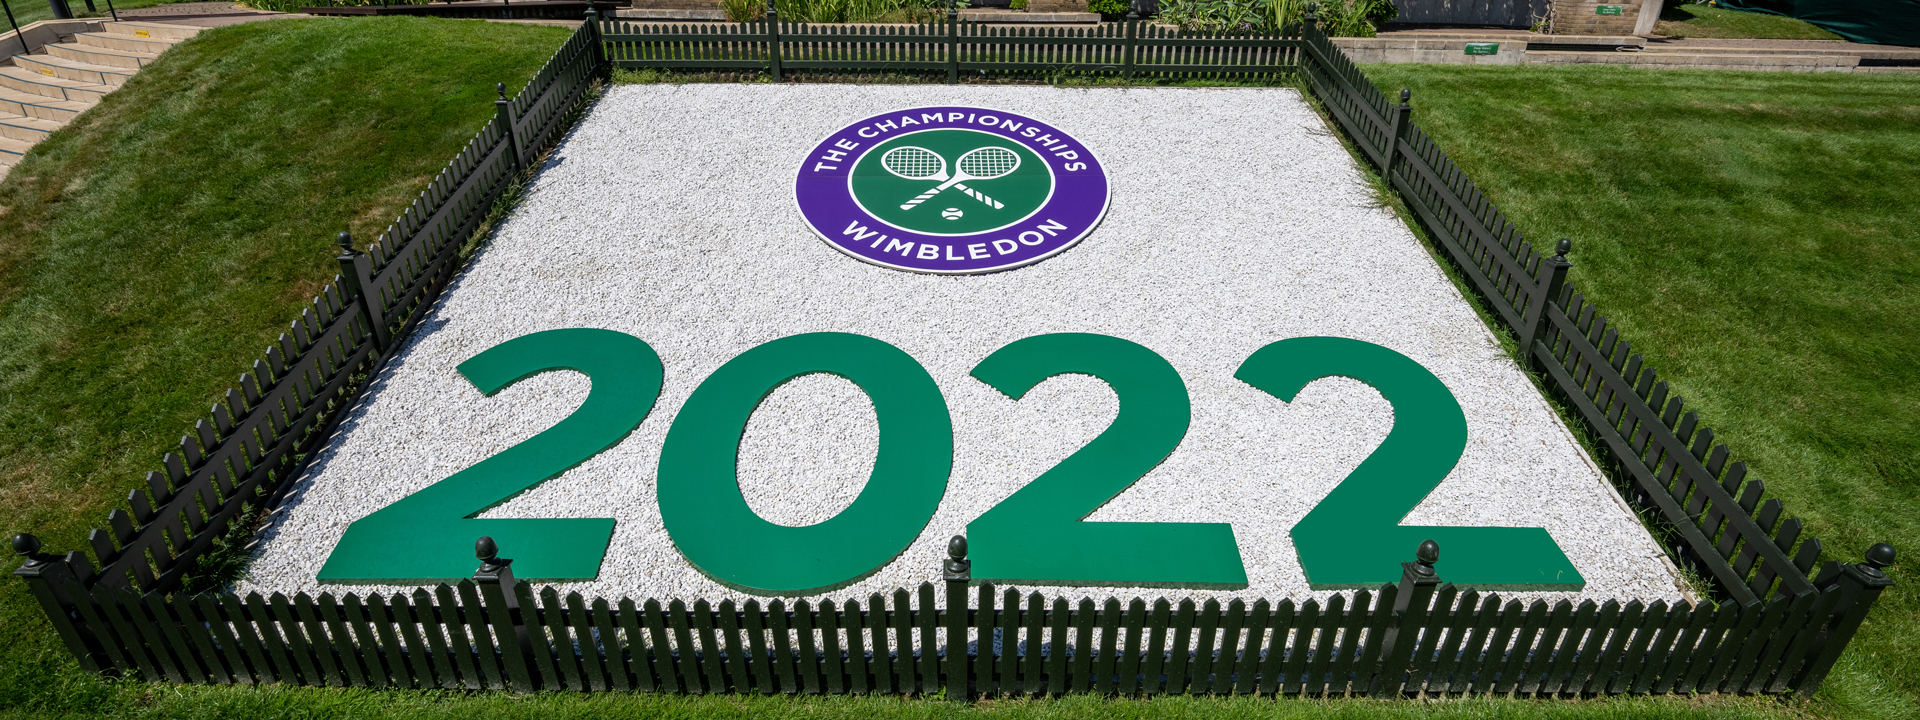 Wimbledon-2022_IBM-1920x720%20%281%29.jpg